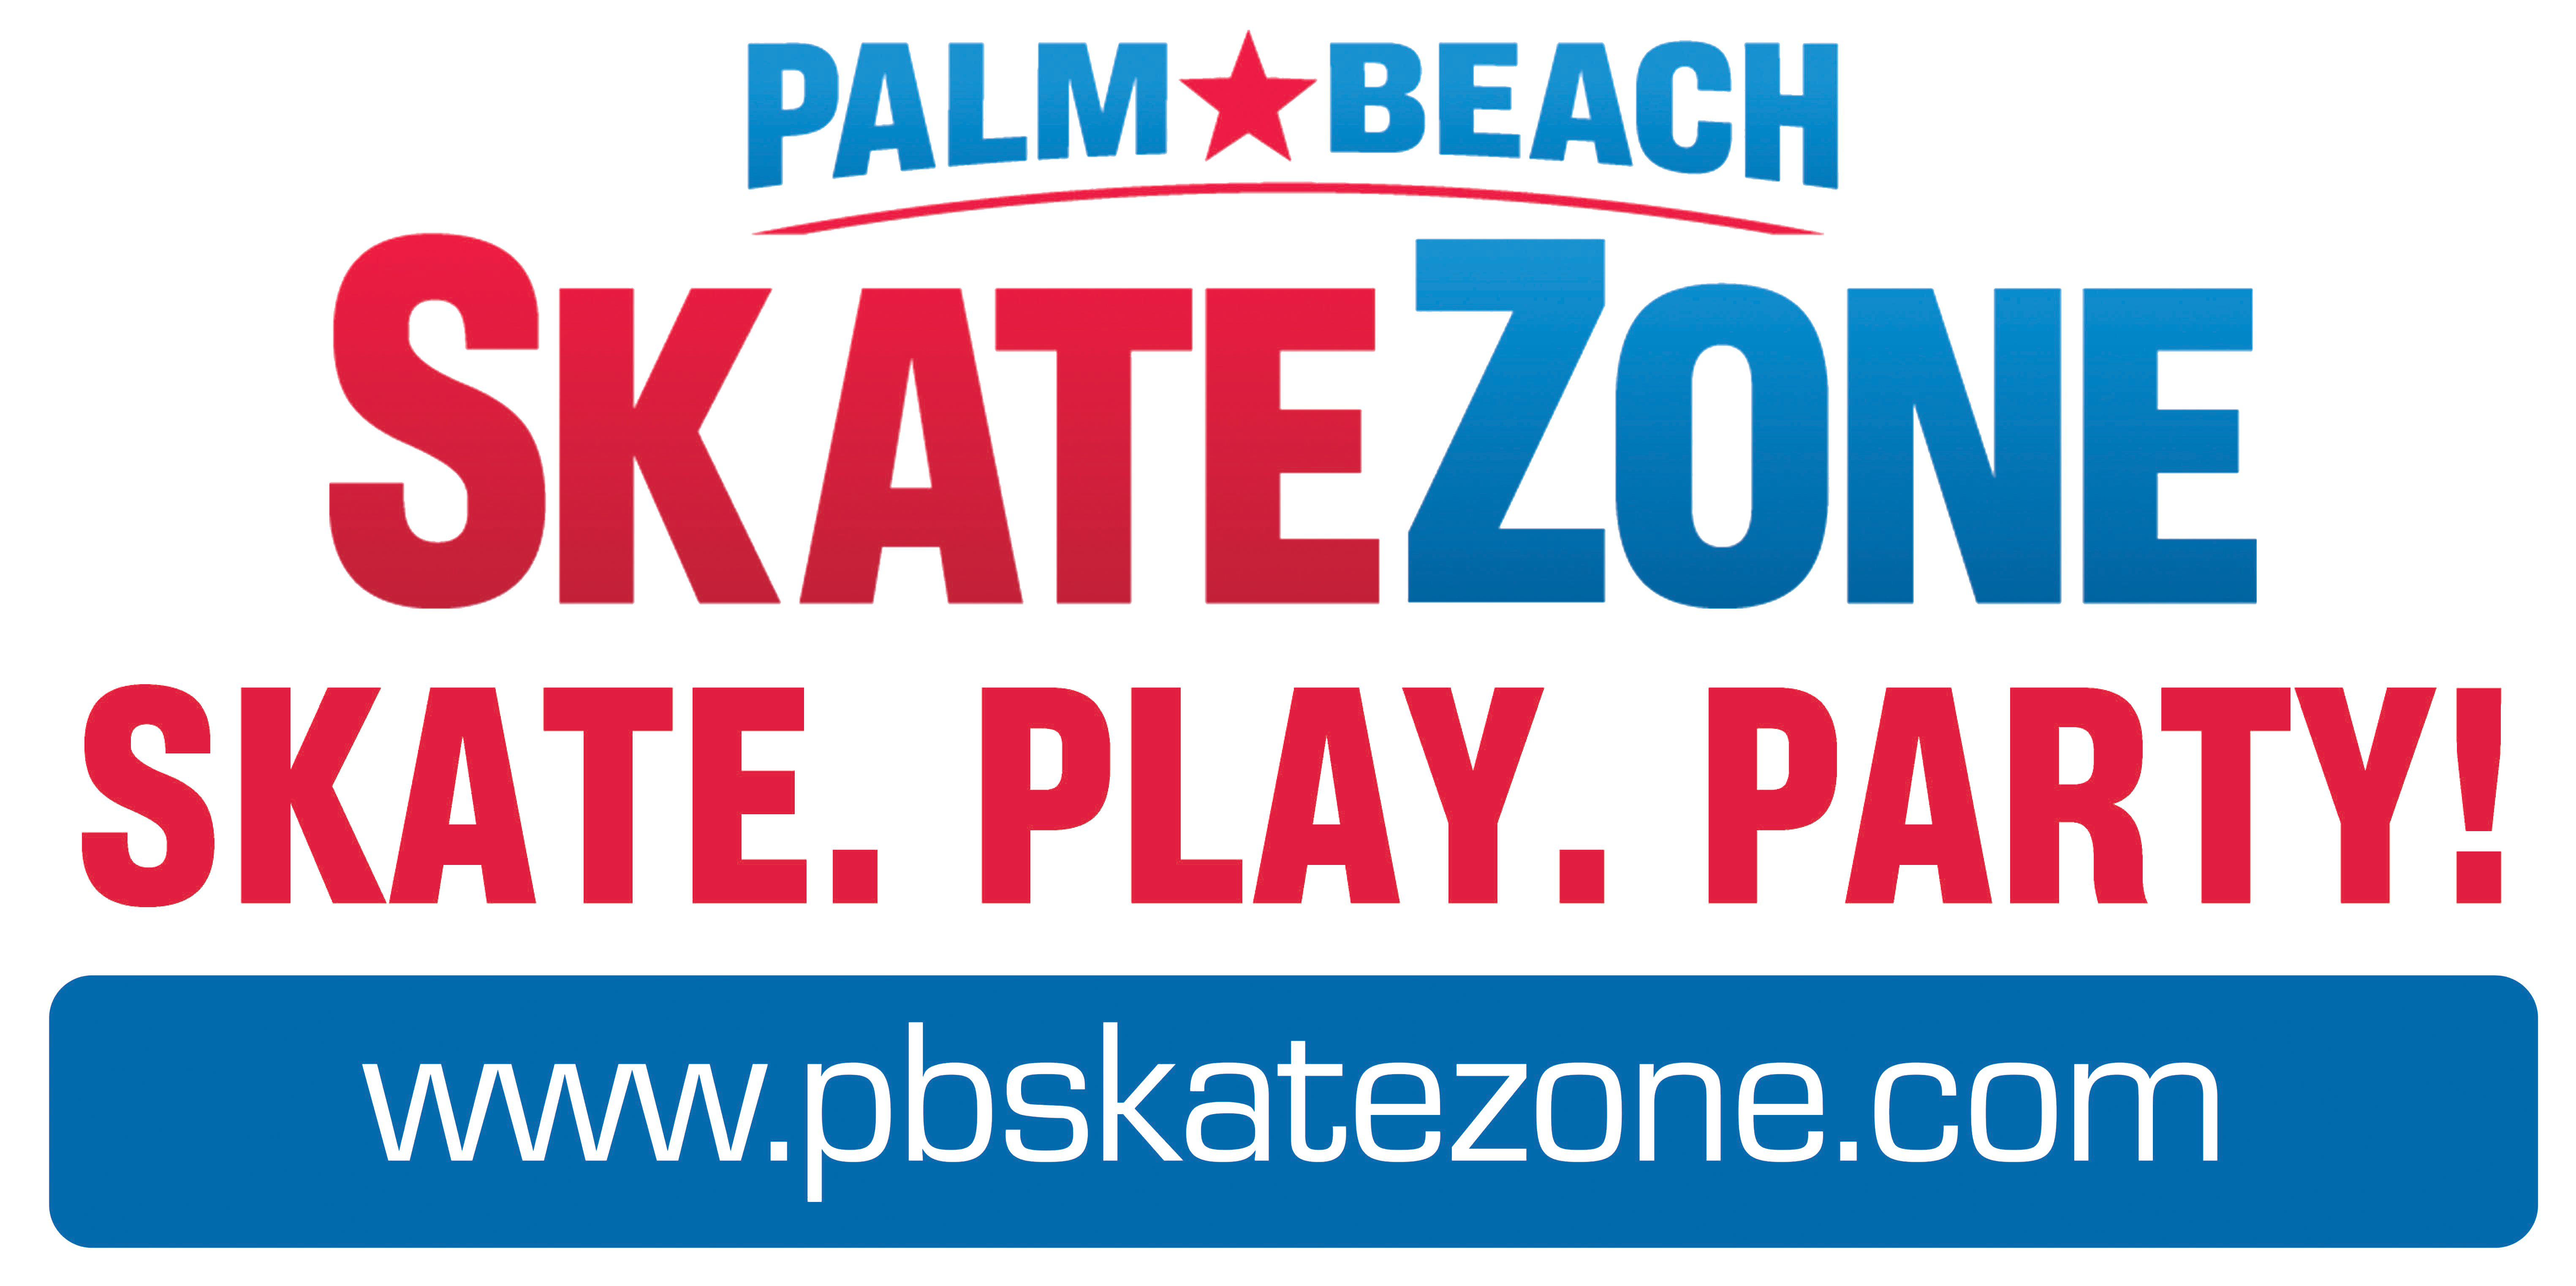 Palm Beach Skate Zone